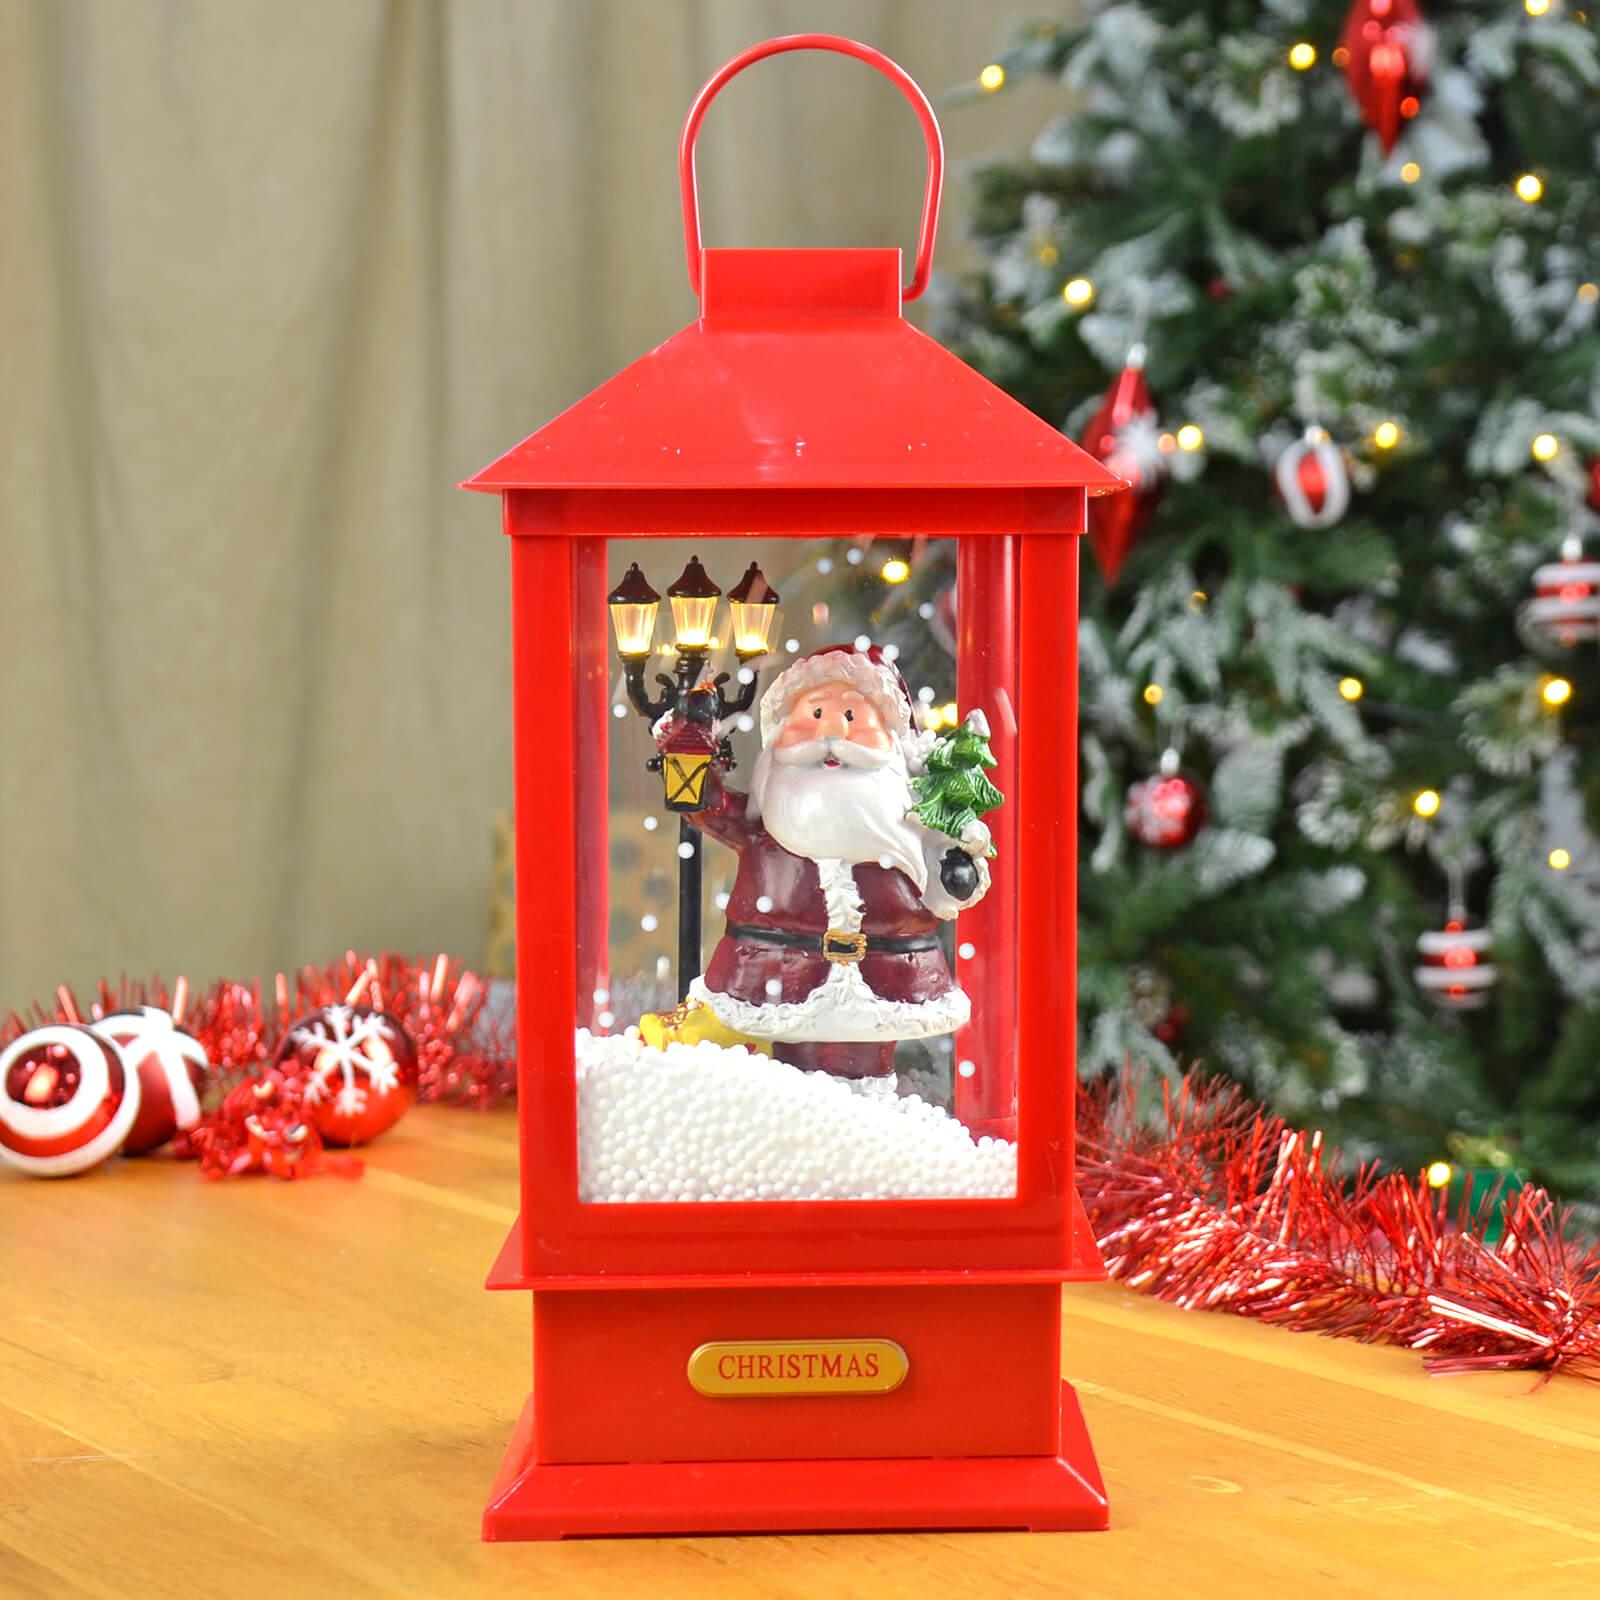 Mr Crimbo 13" Christmas Lantern Light Up Snowing Musical - MrCrimbo.co.uk -XS5716 - Santa -christmas decorations